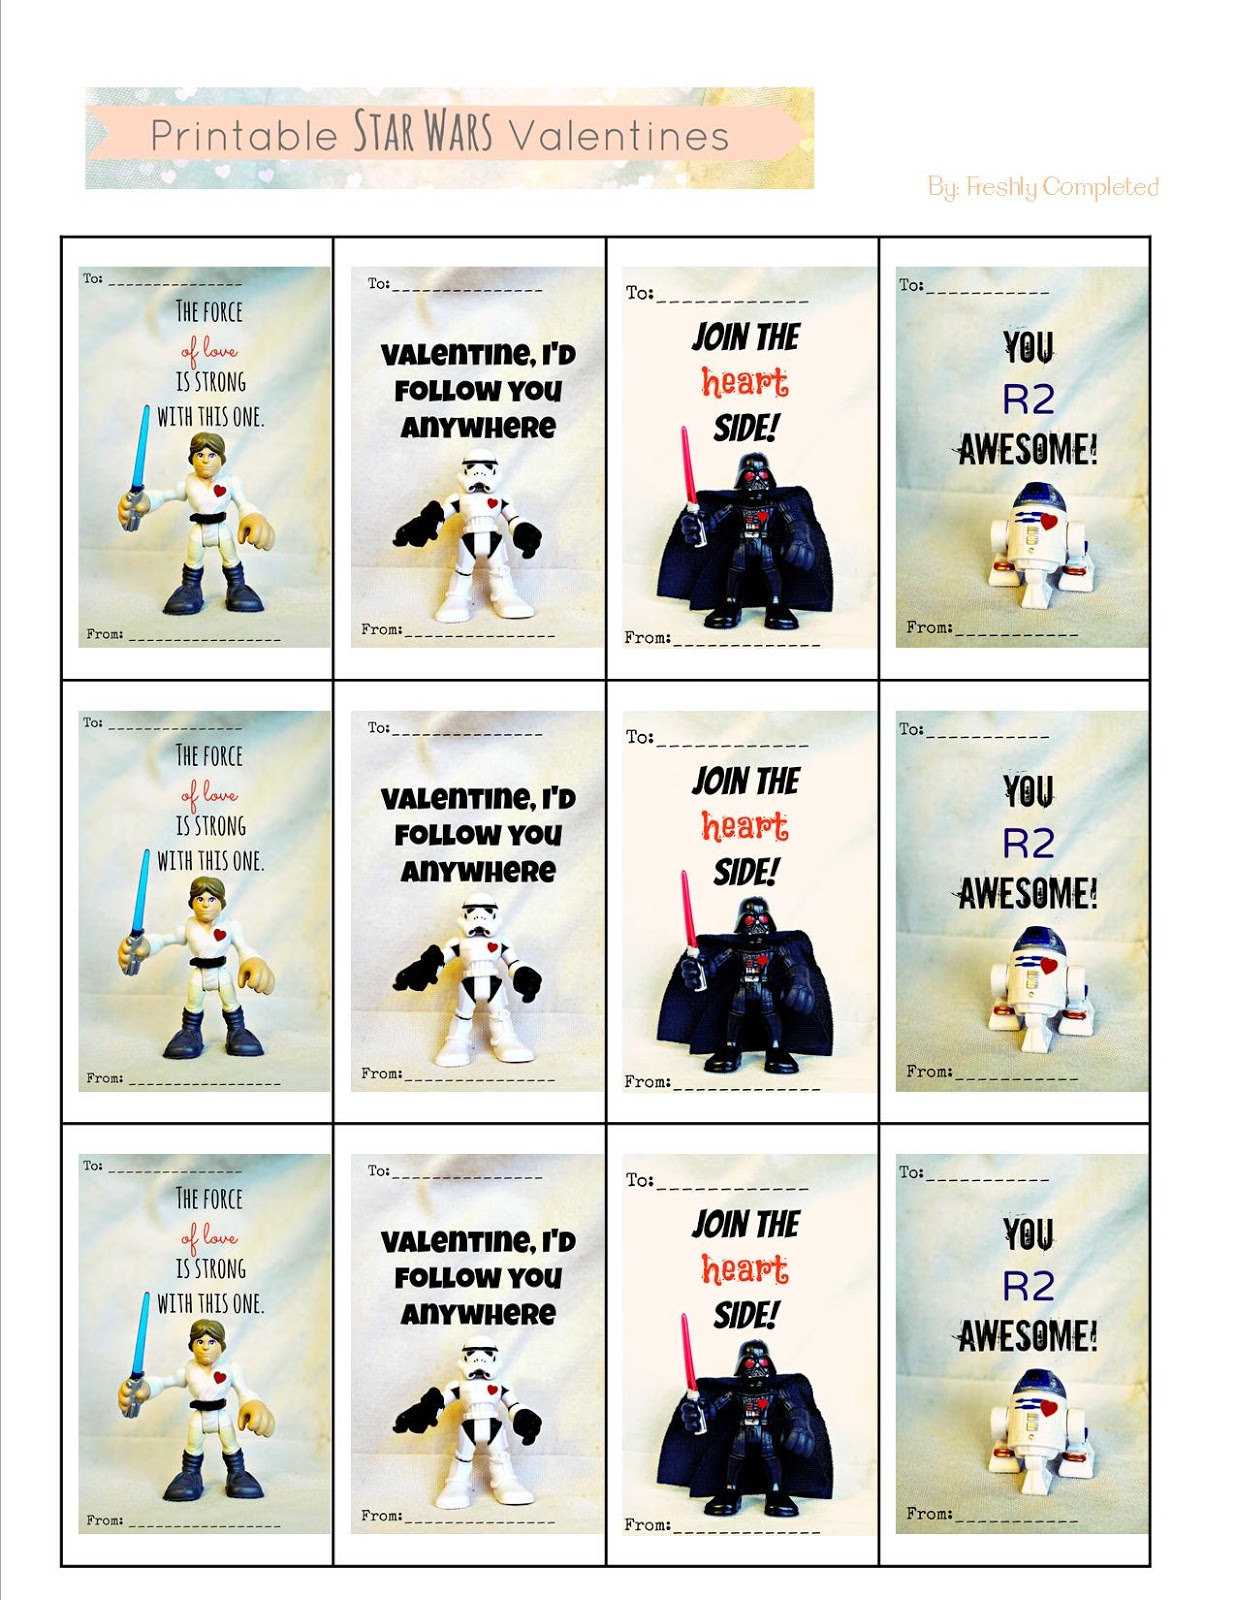 Freshly Completed Printable Star Wars Valentines